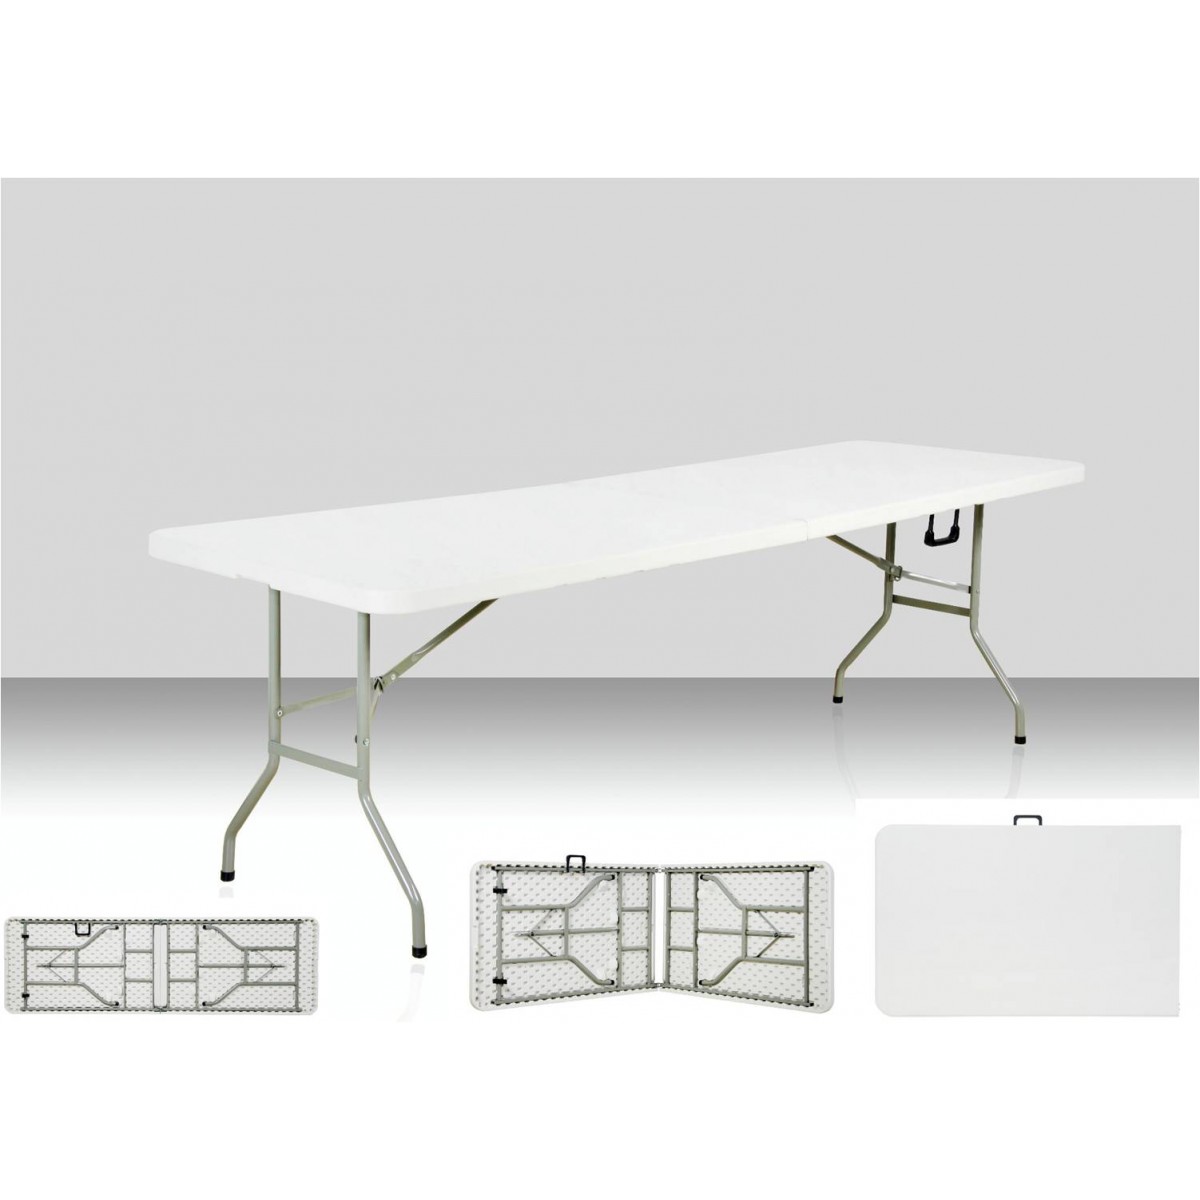 Table rectangulaire 240 x 76 cm pliante en malette - BJS Matériel TP